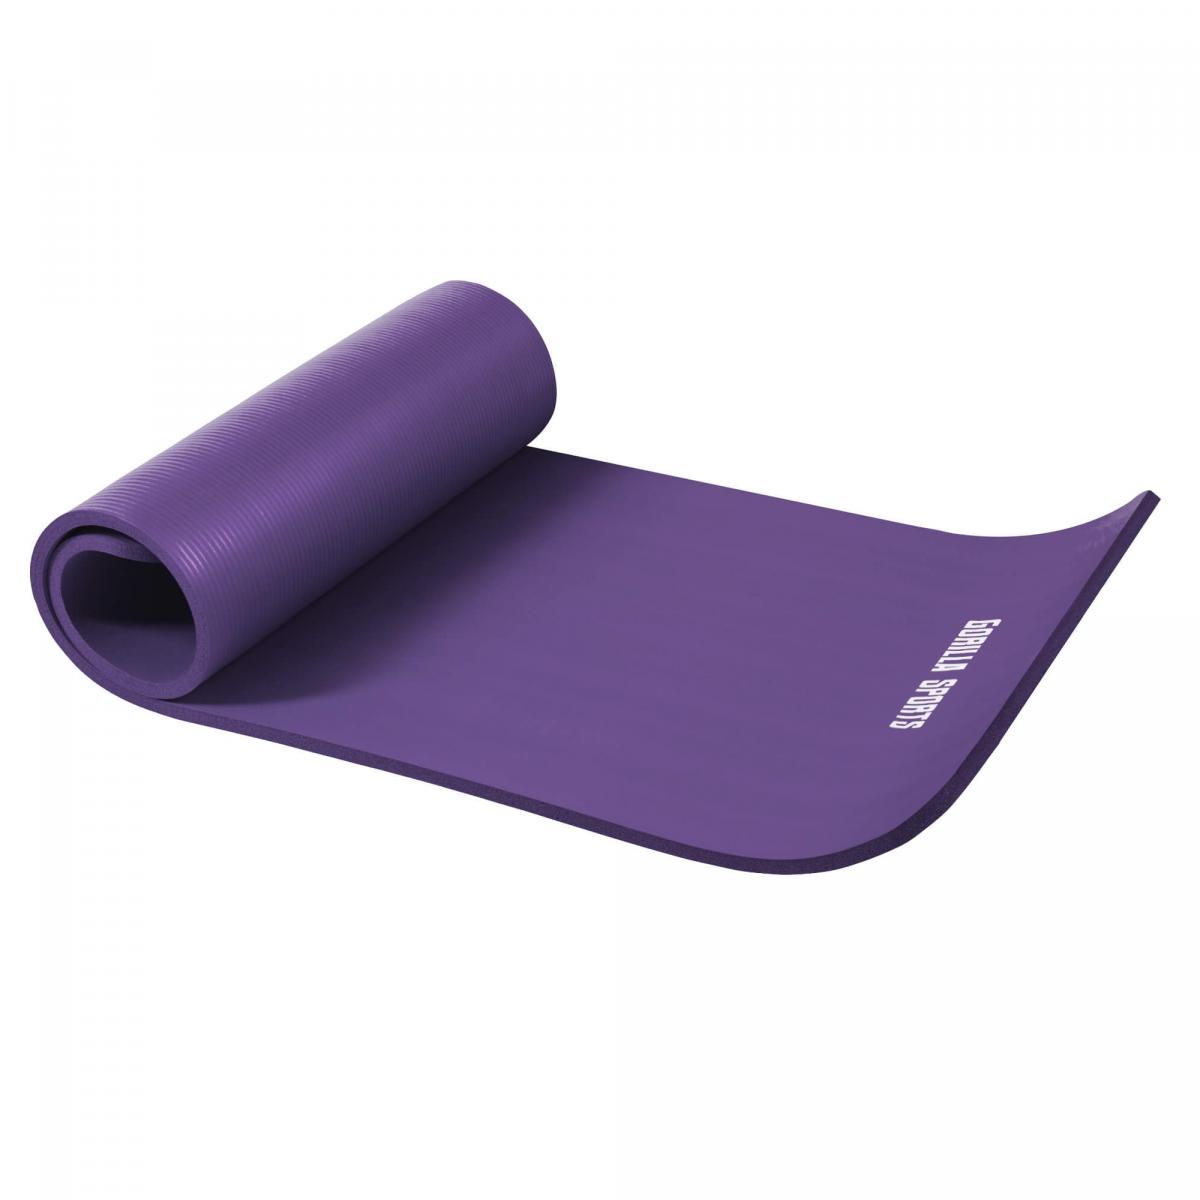 Petit tapis de yoga en mousse - 190 x 60 x 1,5 cm (Yoga - Pilates - sport Ã domicile) Violet